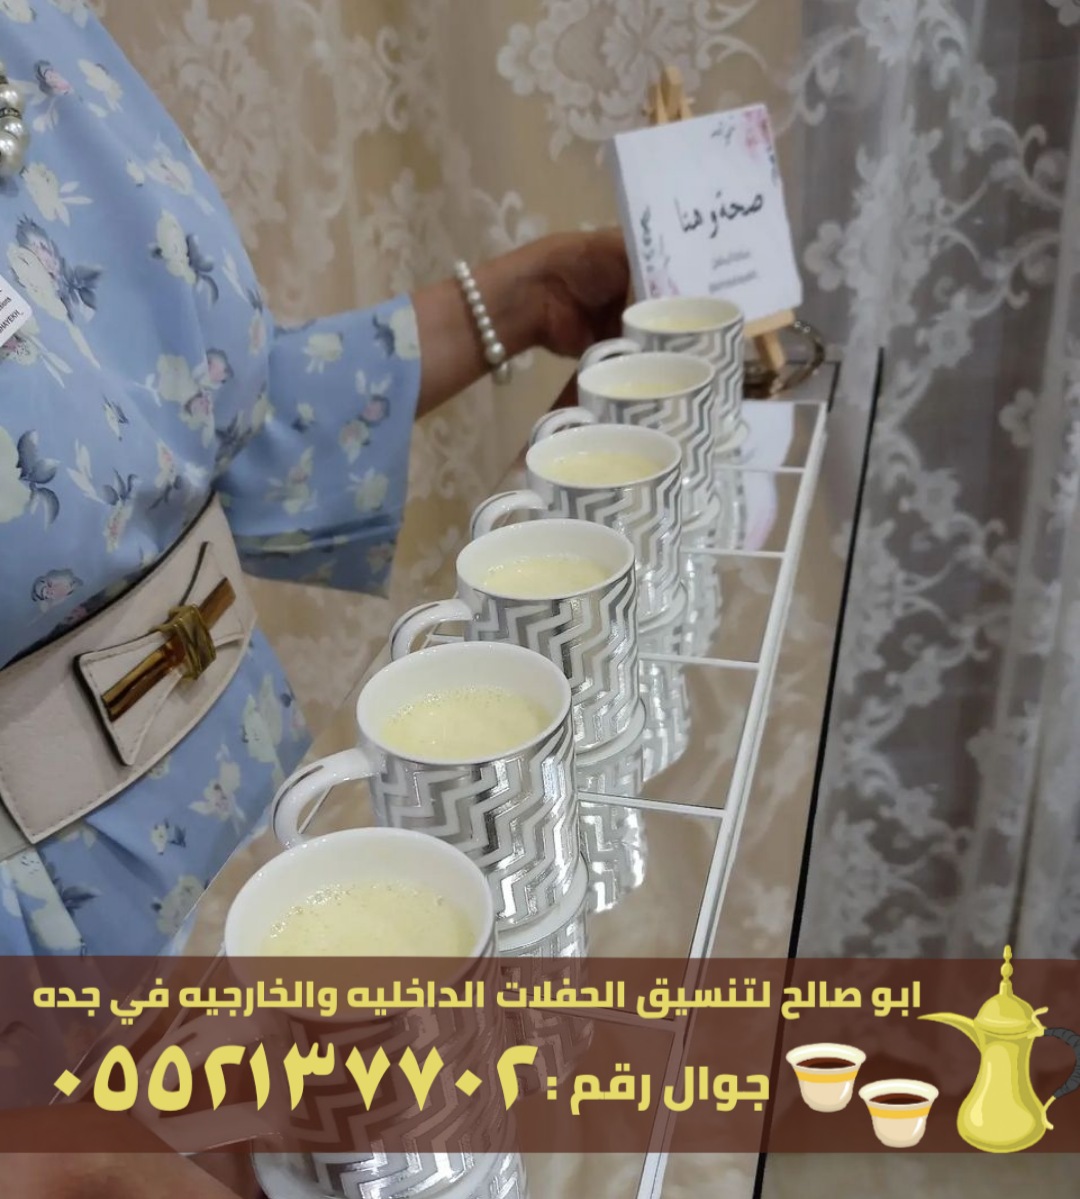 مباشرين قهوة و قهوجي ضيافة في جدة, 0552137702 P_2616ch4g37